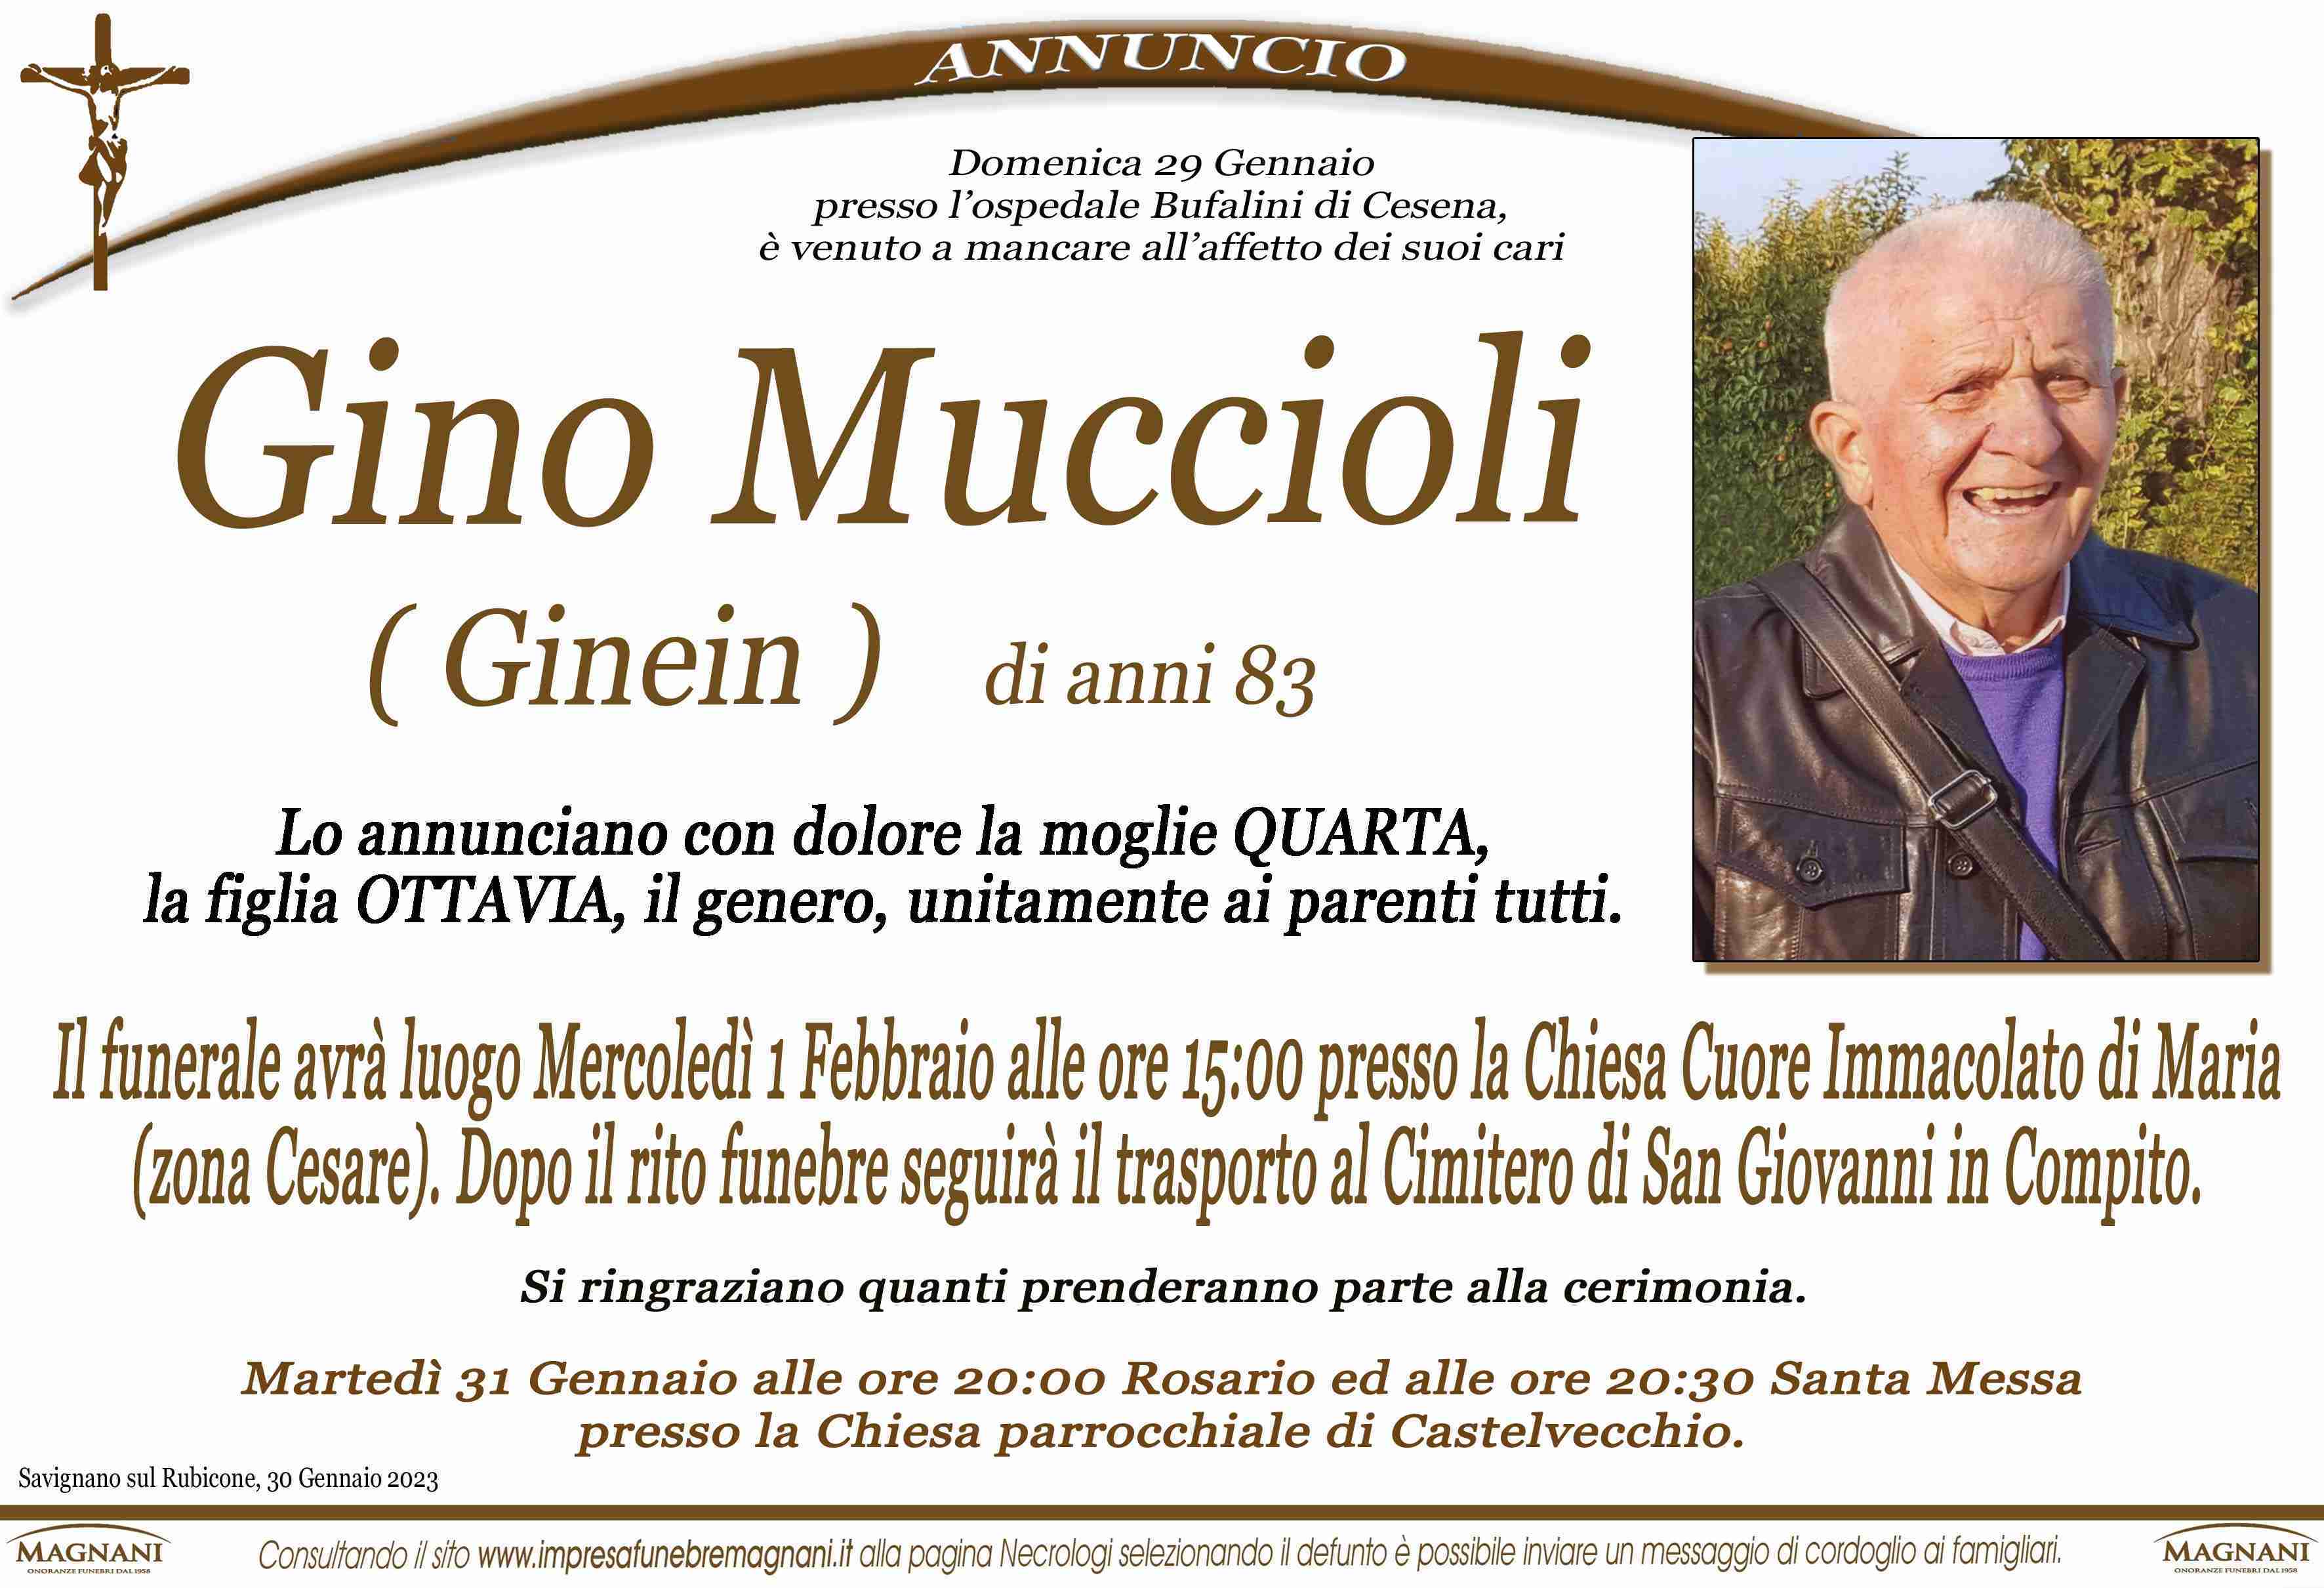 Gino Muccioli